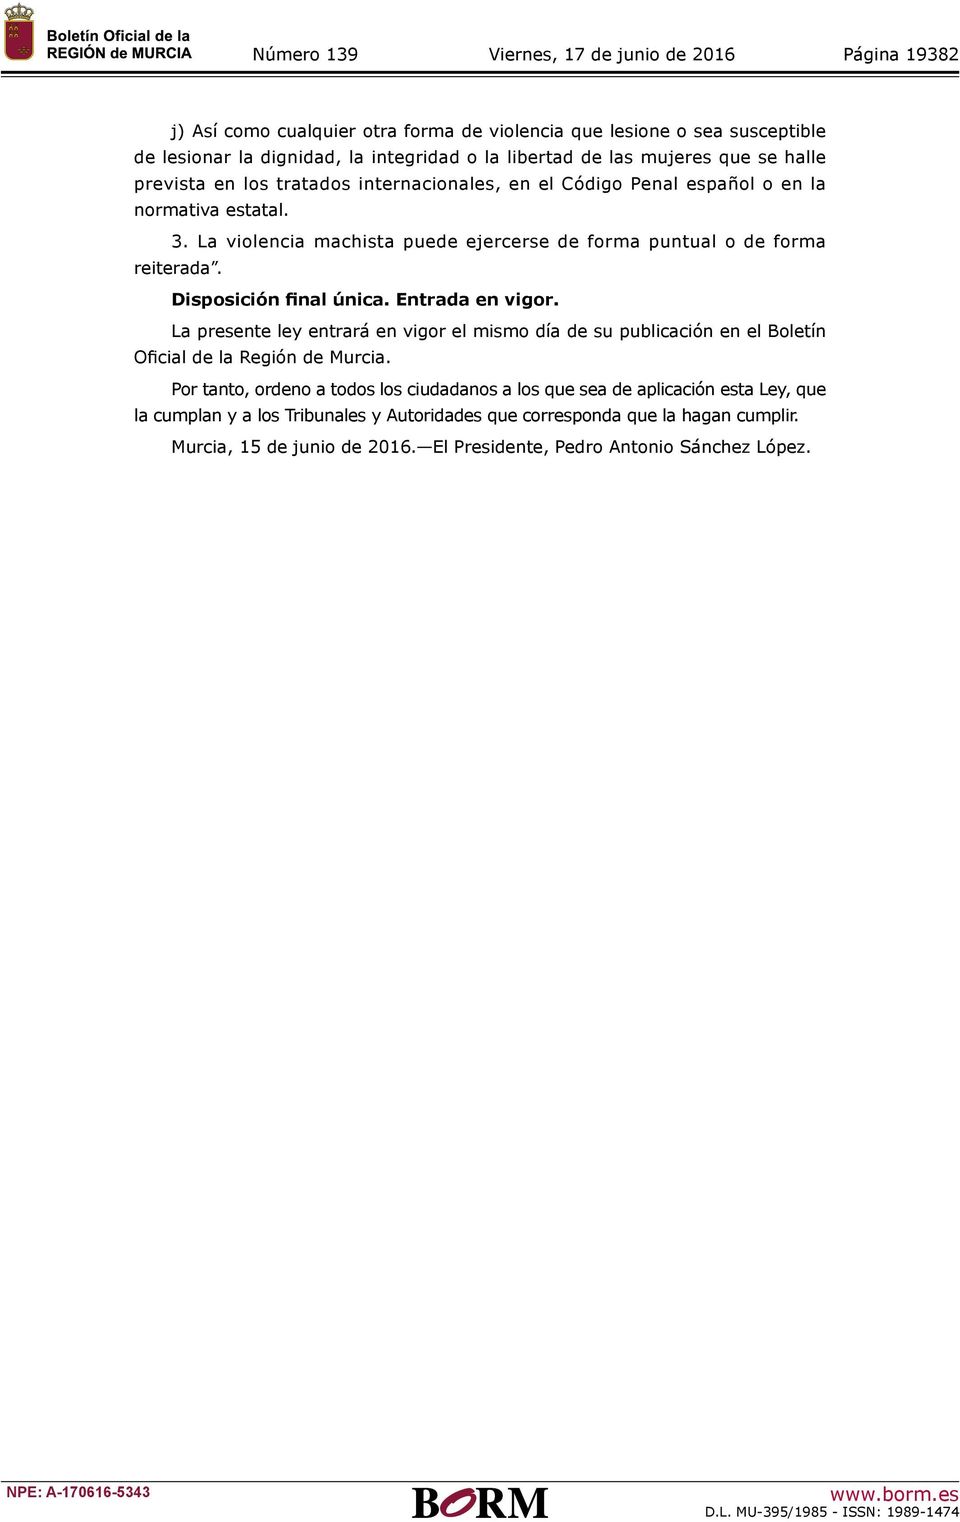 La presente ley entrará en vigor el mismo día de su publicación en el Boletín Oficial de la Región de Murcia.